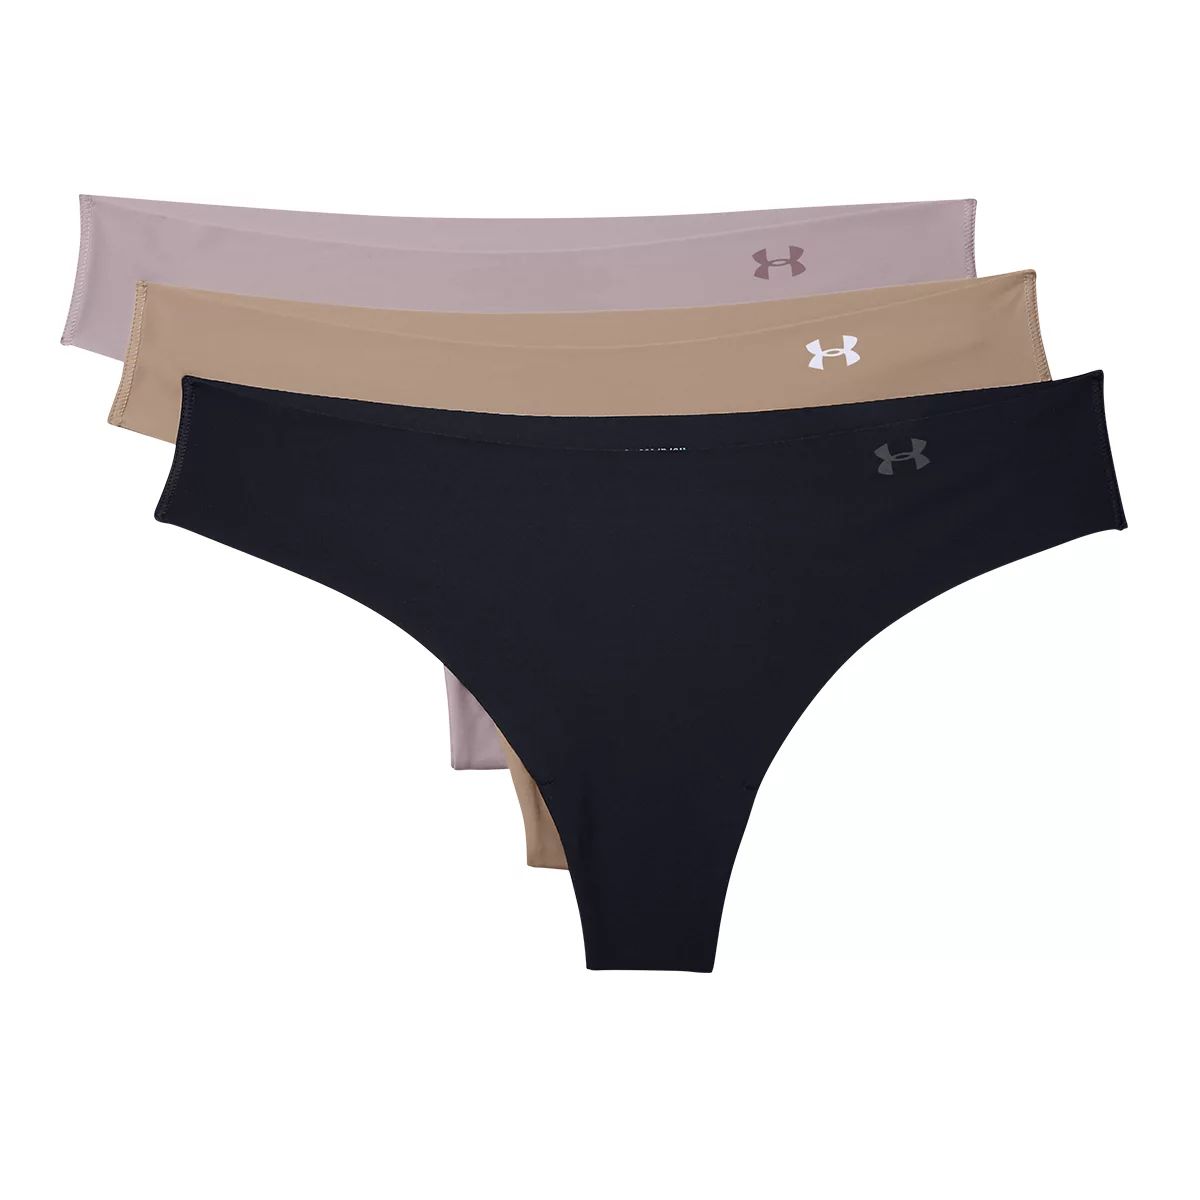 Women's Seamless Nude Thong Panties Underwear, 4-Pack